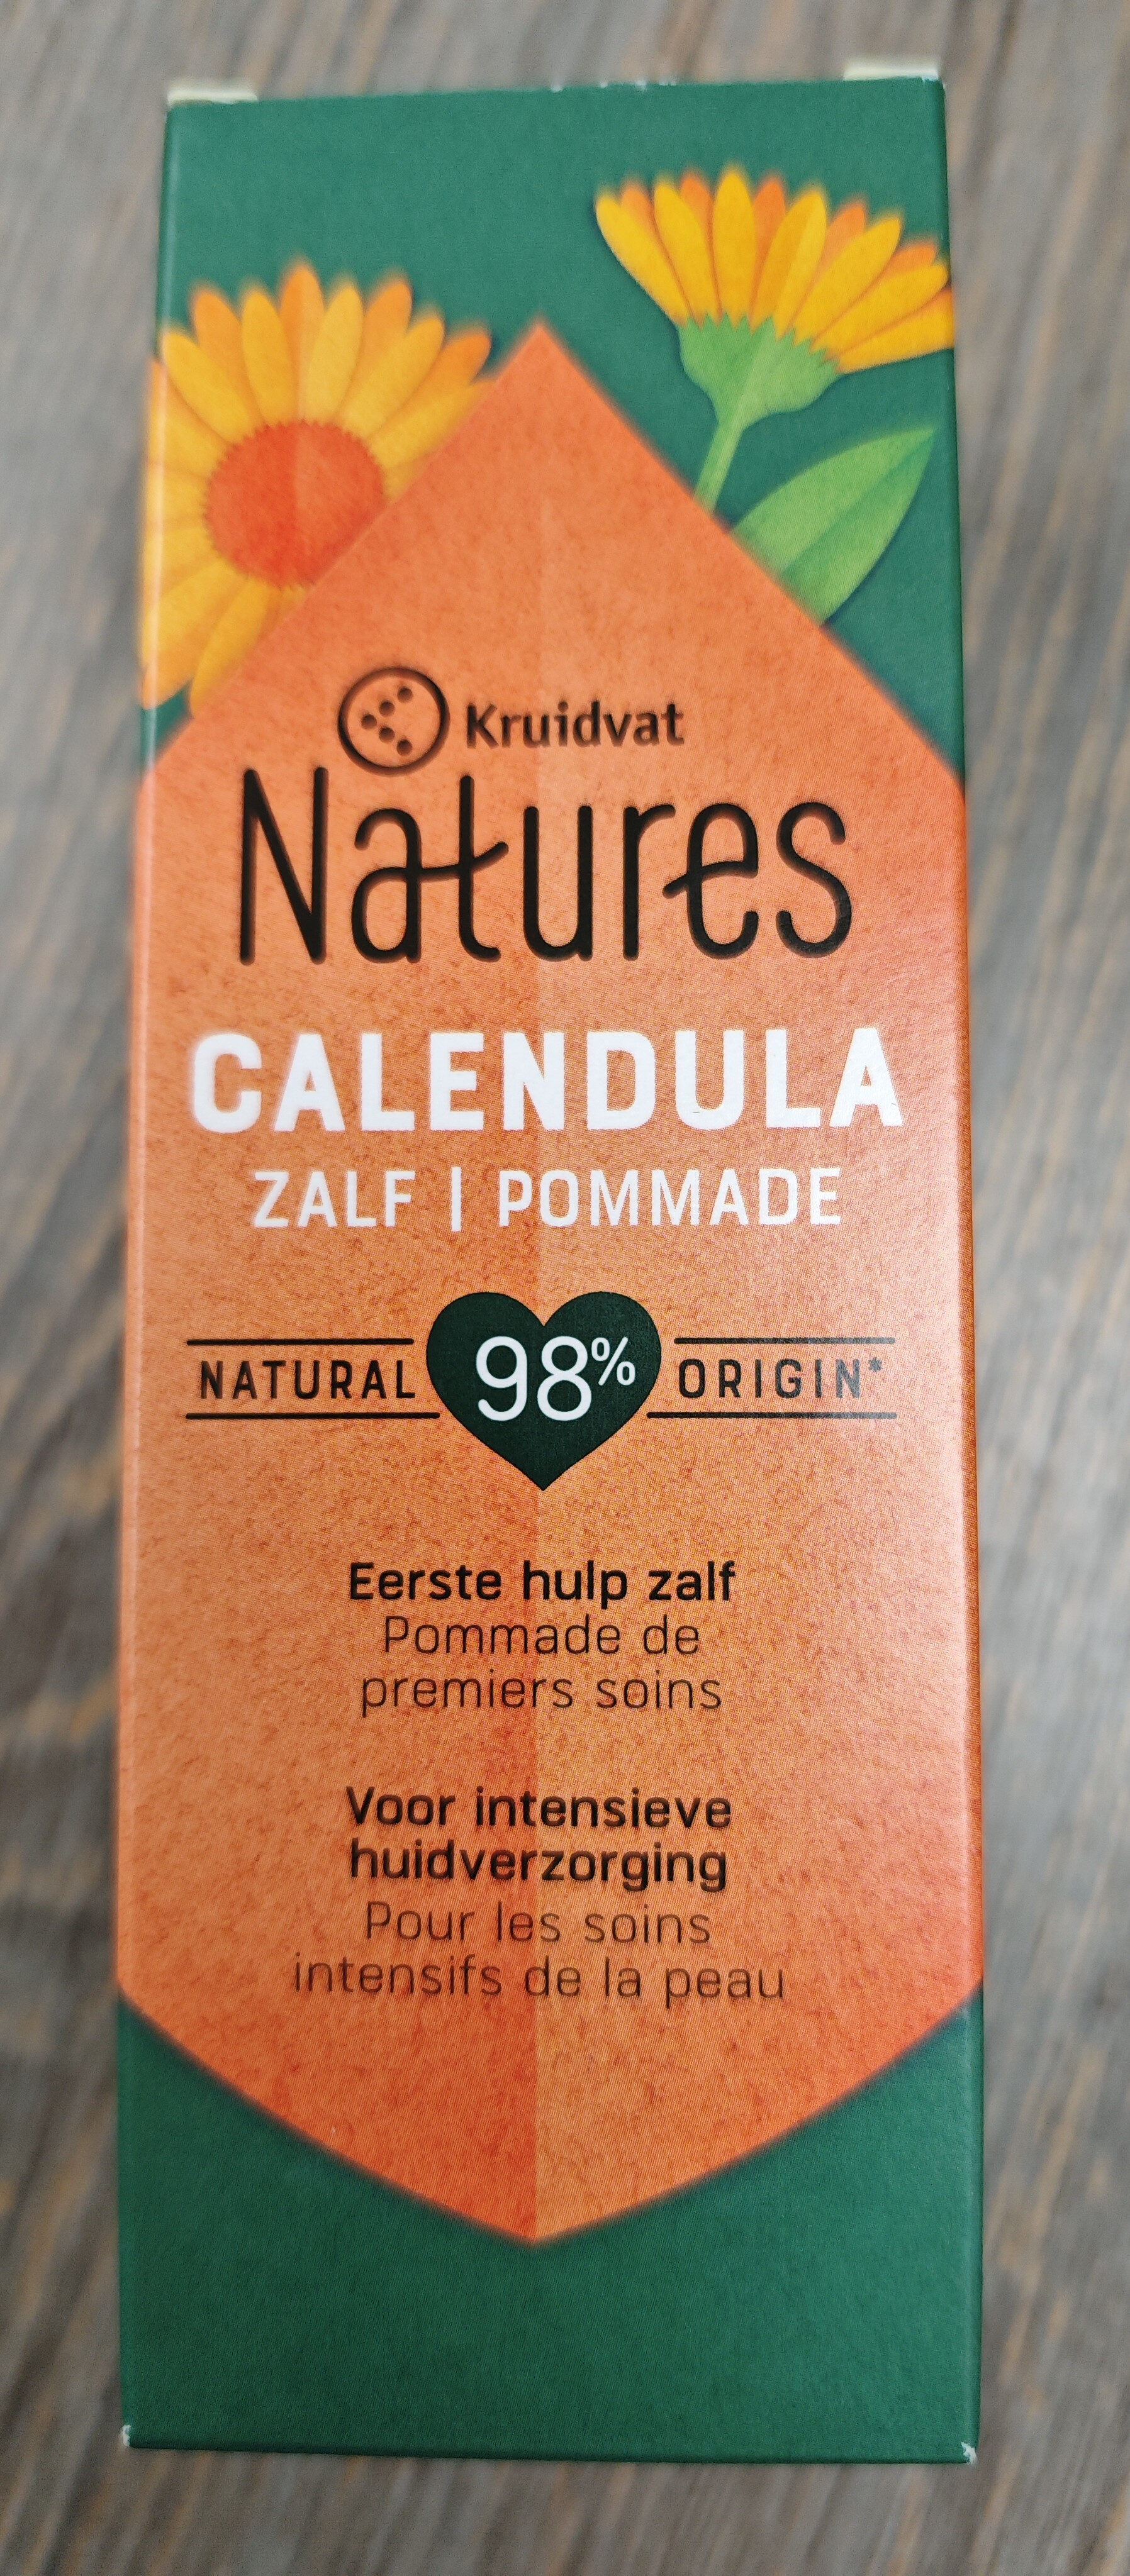 Kruidvat Natures Calendula - Produkto - fr